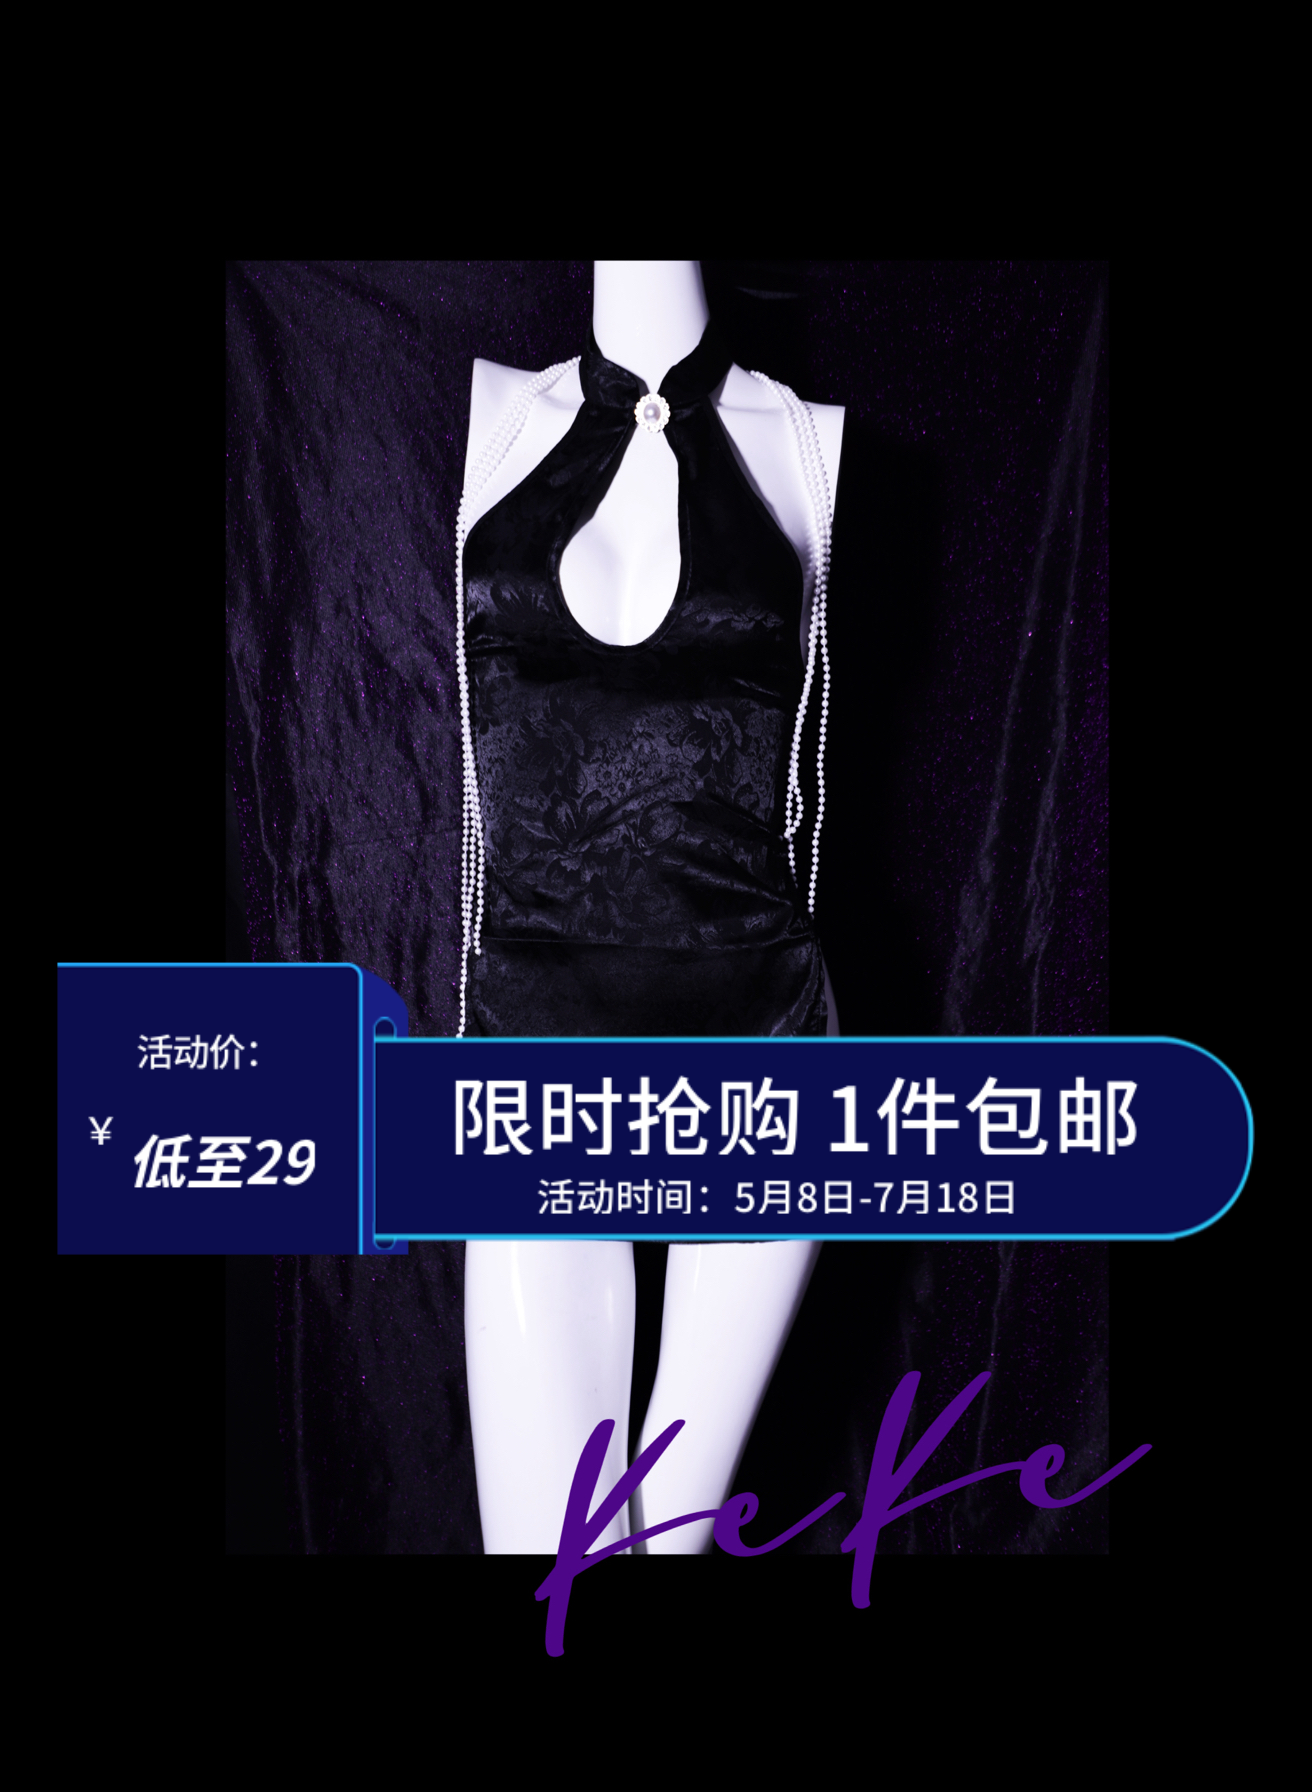 KeKe 致命尤物系列 美女荷官同款氛围性感黑透视吊带睡裙